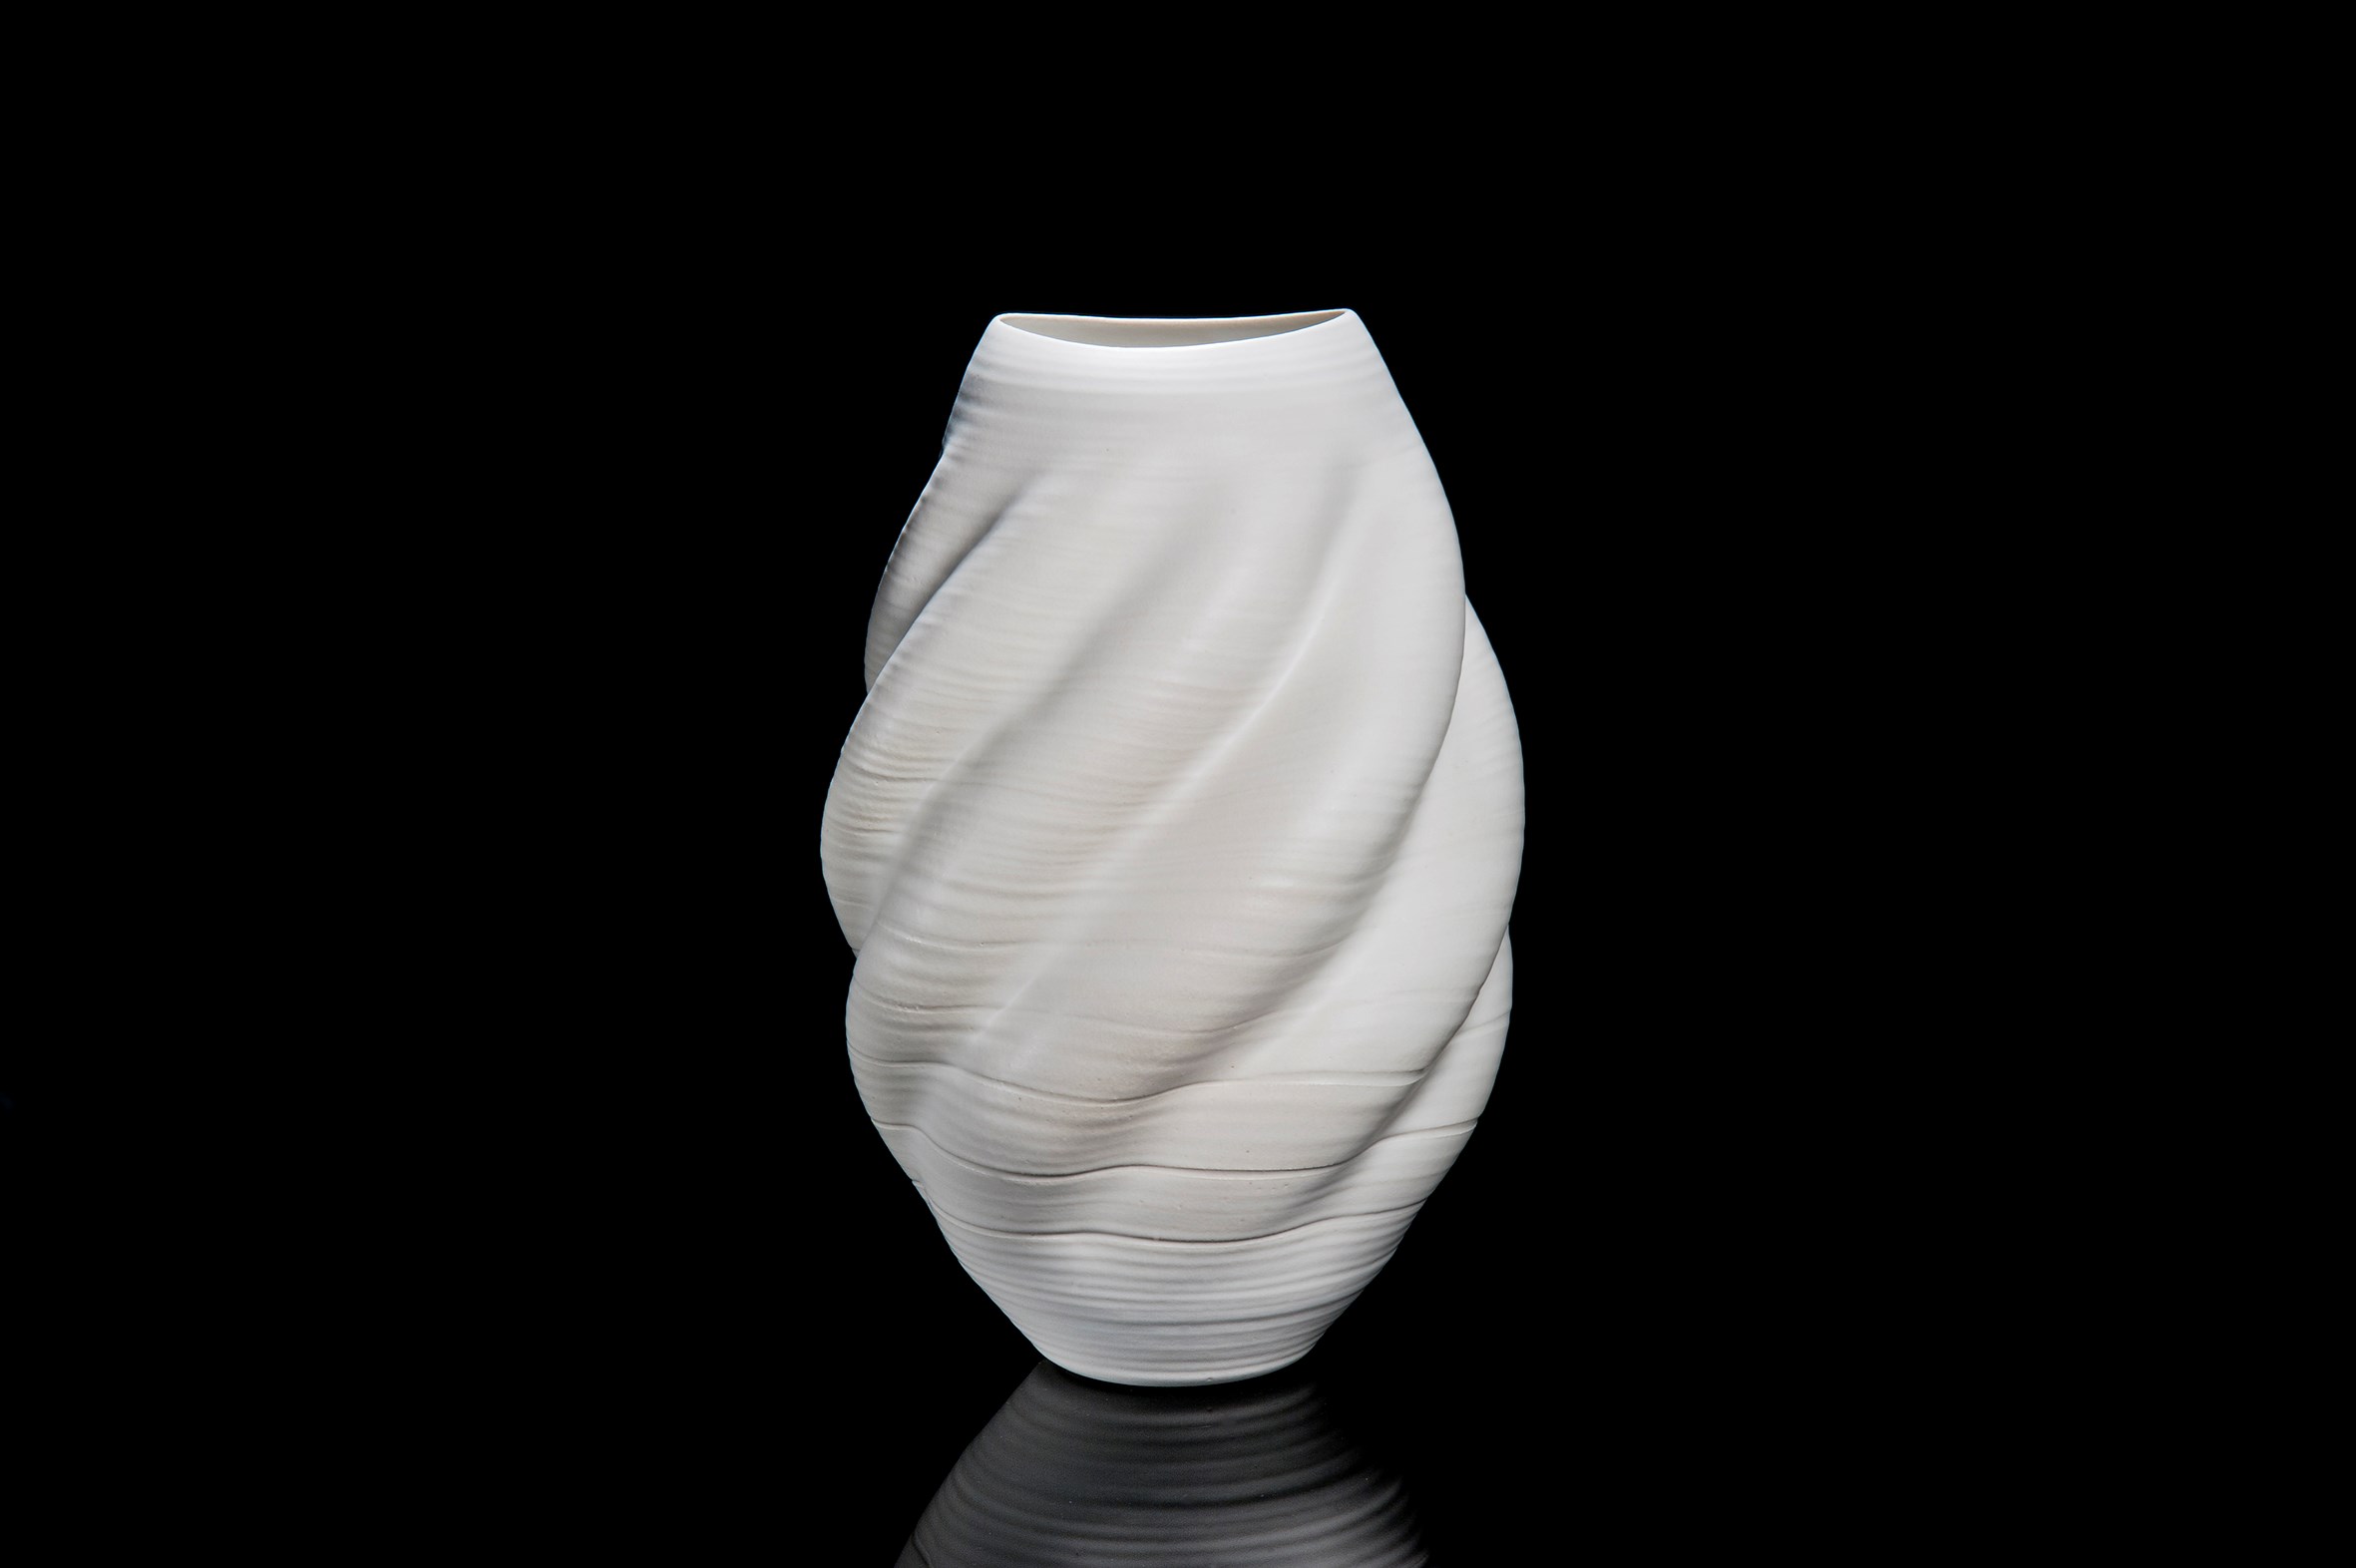 crumpled white ceramic vase art sculpture Nicholas Arroyave-Portela